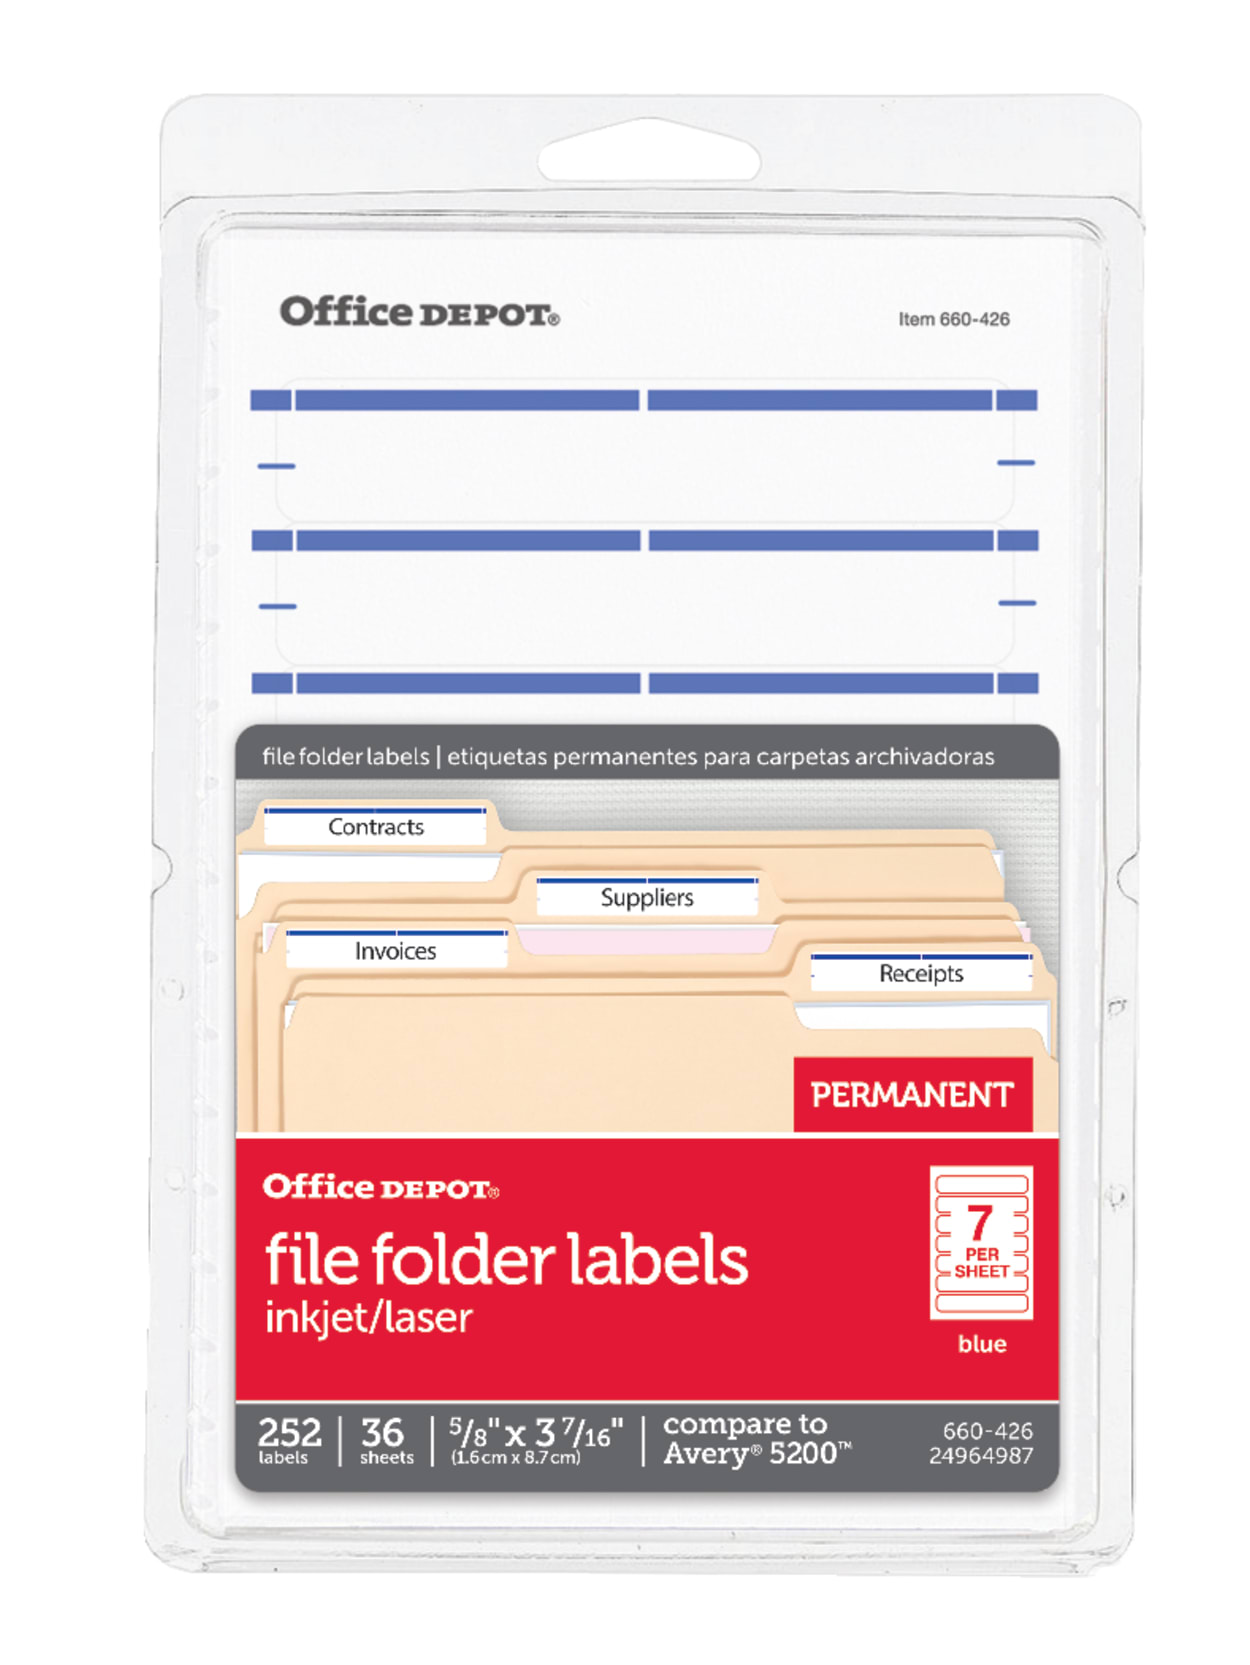 Office Depot Brand Print Or Write Color Permanent Inkjetlaser File Folder Labels Od98817 58 X 3 12 Dark Blue Pack Of 252 Office Depot